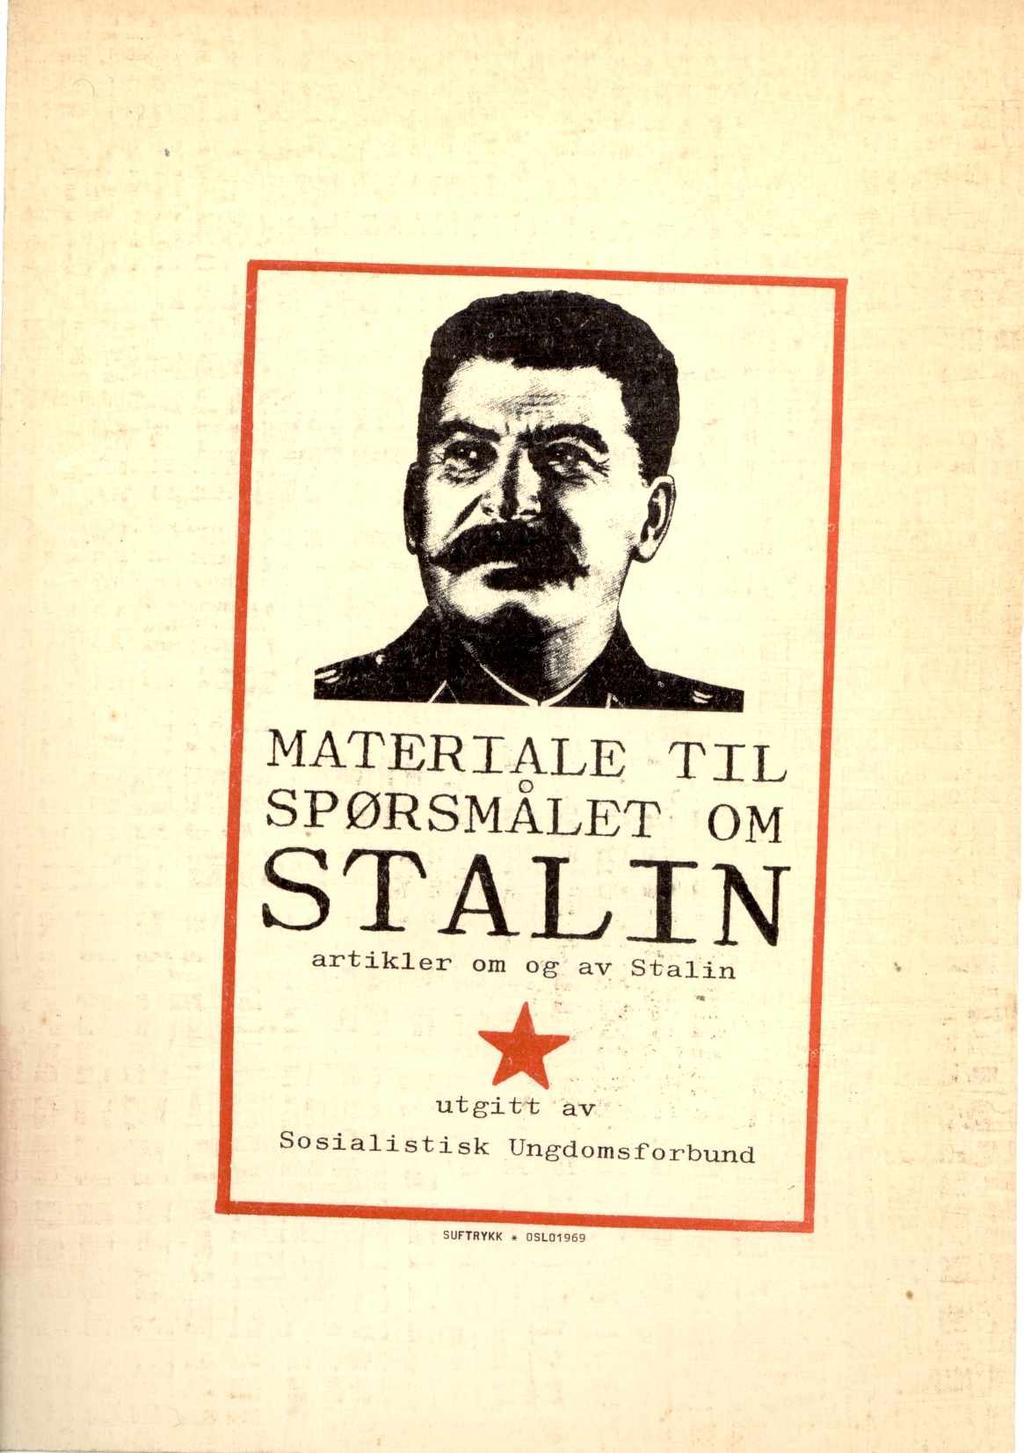 Sosialistisk